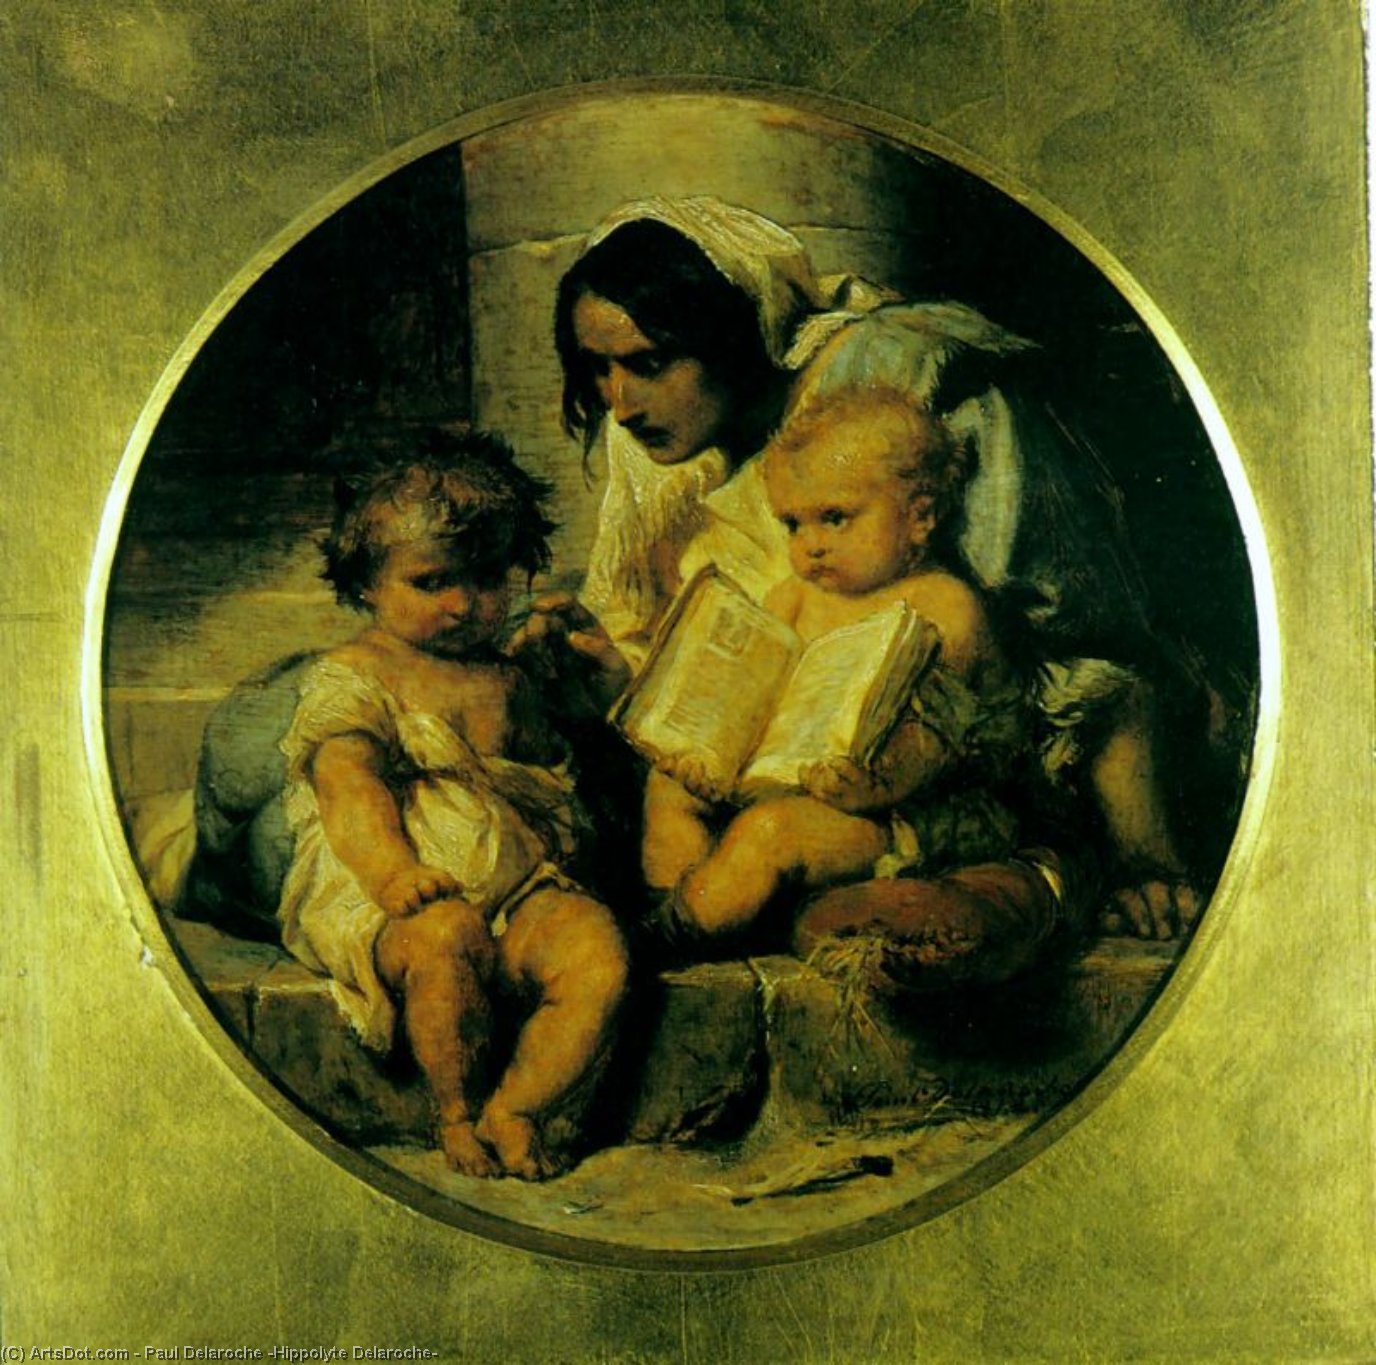 WikiOO.org - Encyclopedia of Fine Arts - Lukisan, Artwork Paul Delaroche (Hippolyte Delaroche) - A Child Learning to Read